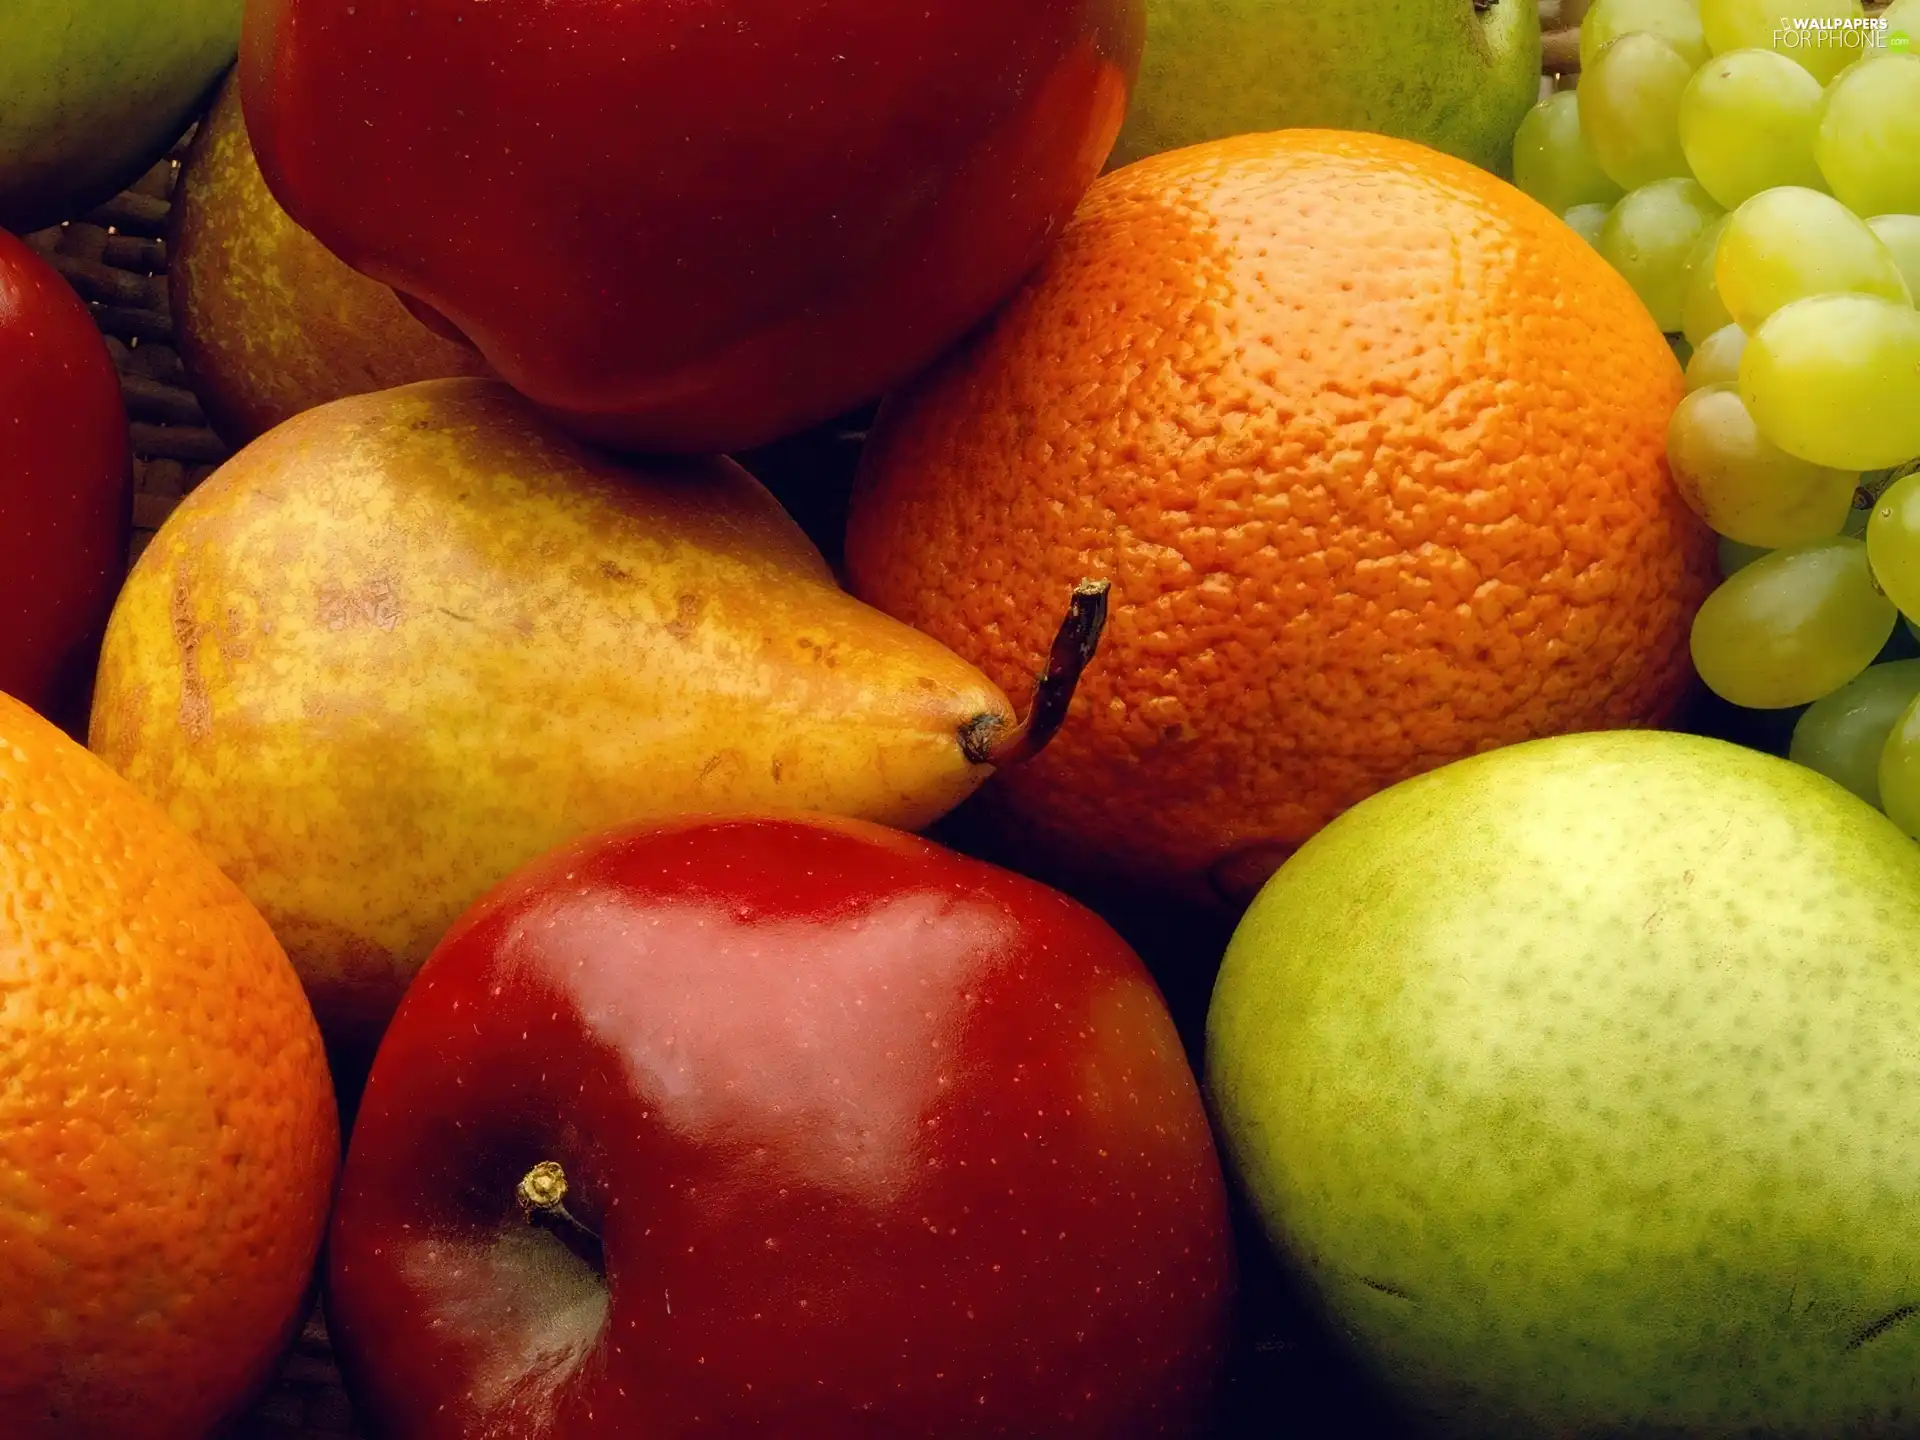 truck concrete mixer, orange, Fruits, apples, color